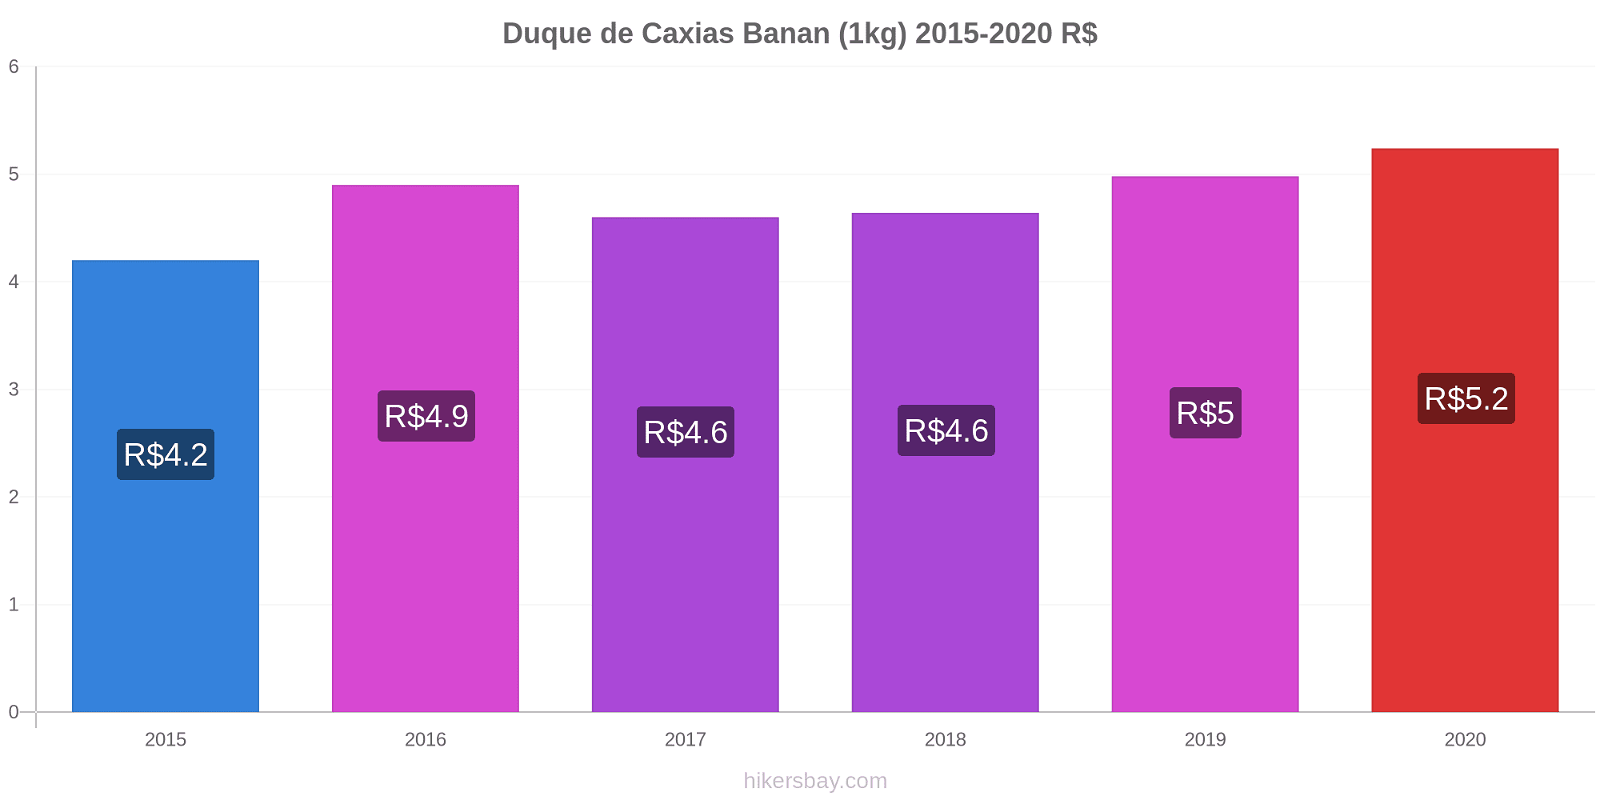 Duque de Caxias prisförändringar Banan (1kg) hikersbay.com